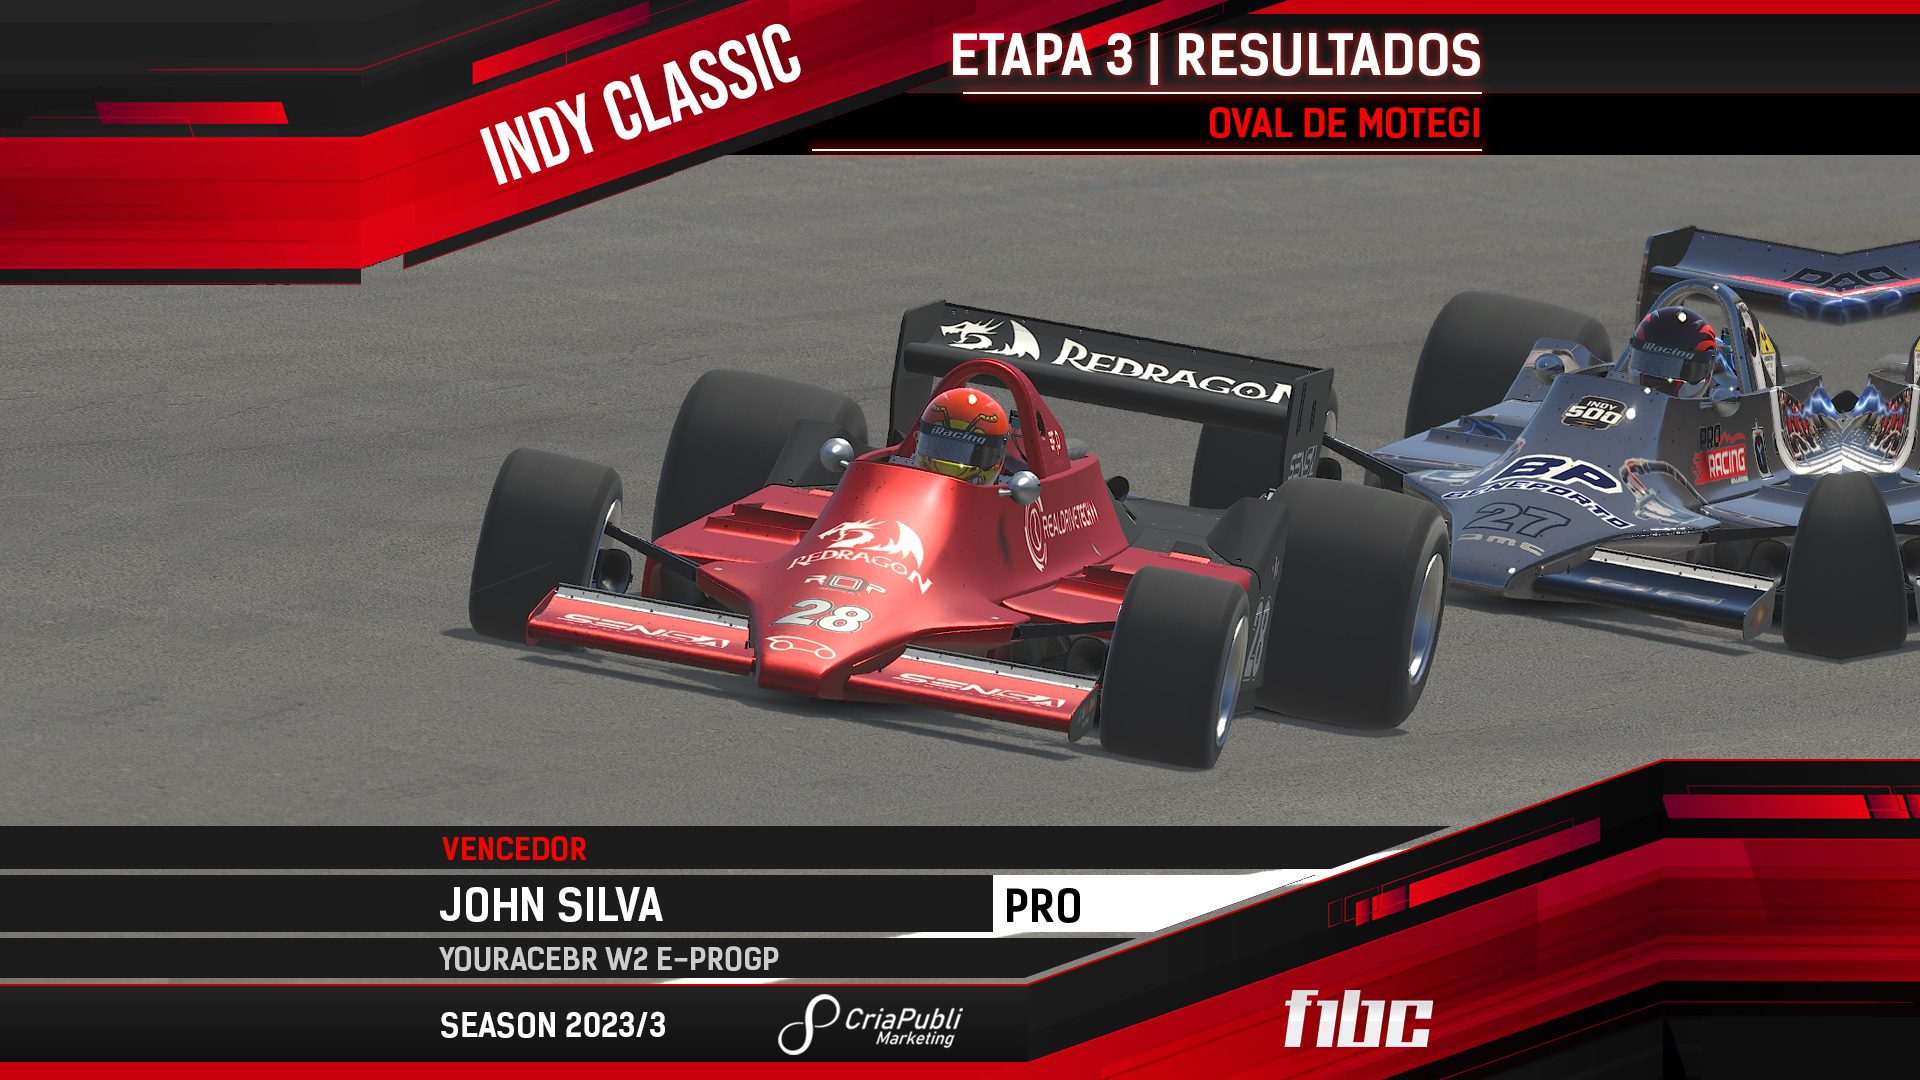 F1BC Indy Classic: John Silva (YouRaceBR) gana una gran carrera en Motegi